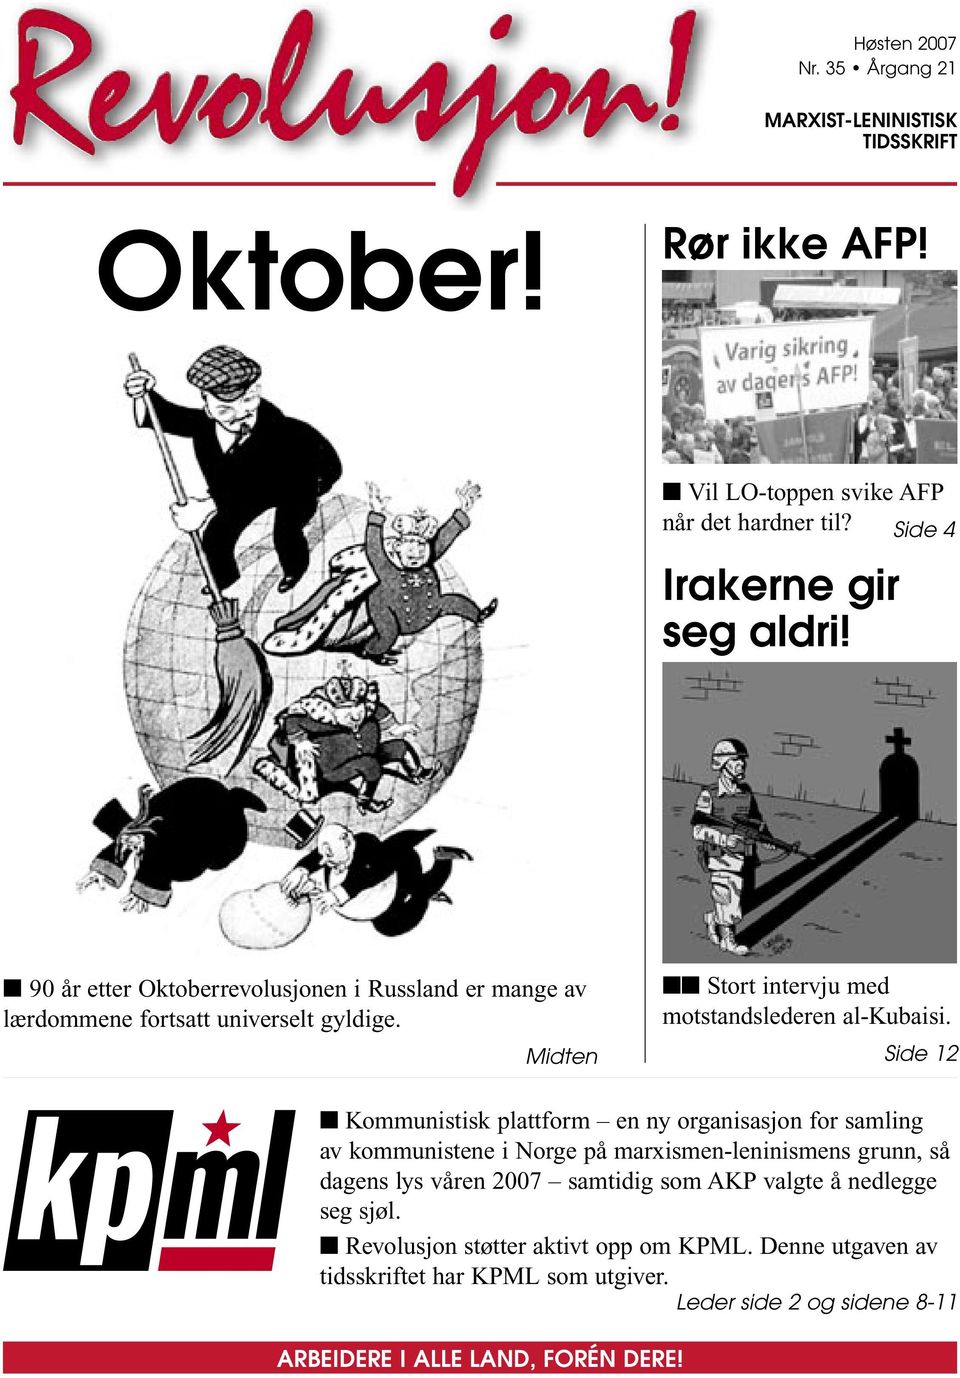 Side 12 Kommunistisk plattform en ny organisasjon for samling av kommunistene i Norge på marxismen-leninismens grunn, så dagens lys våren 2007 samtidig som AKP